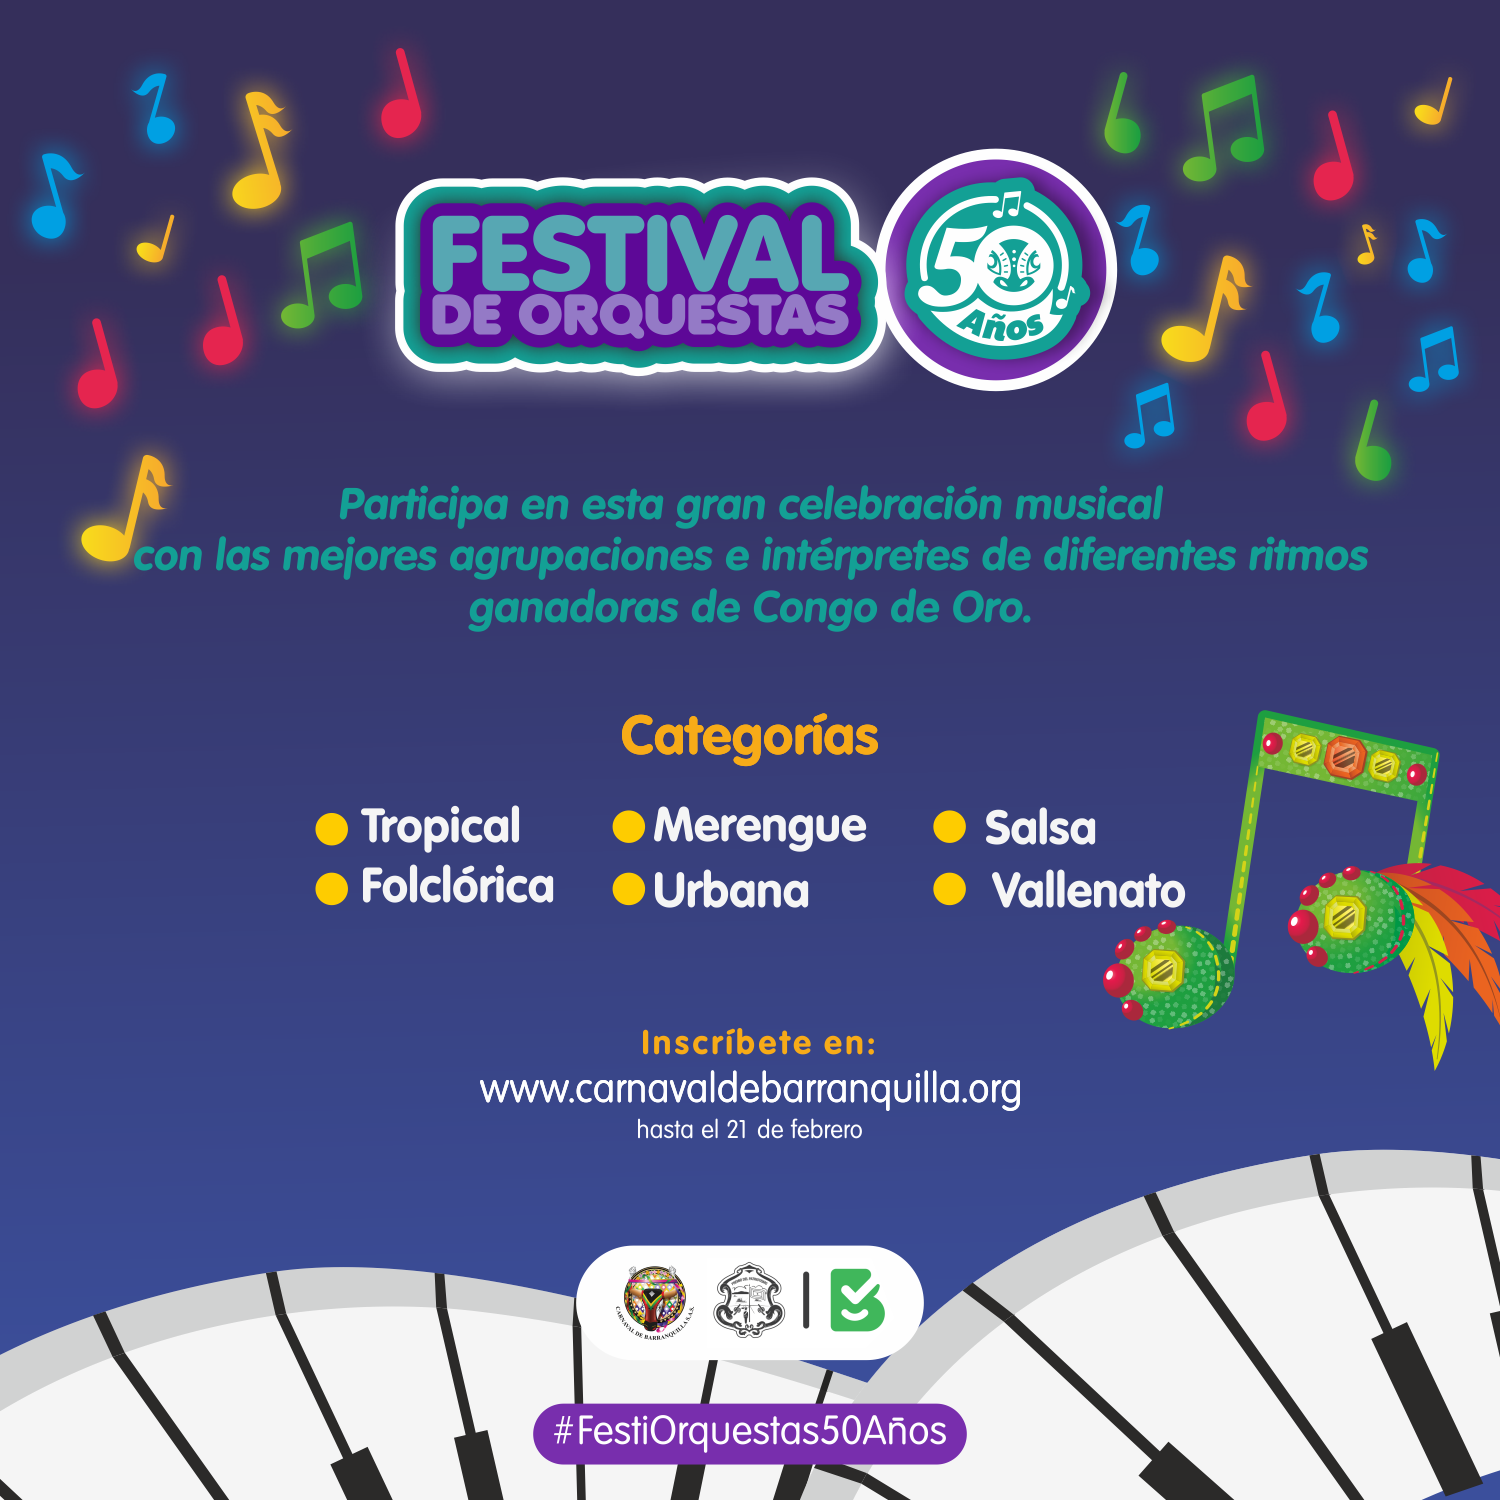 Inscripciones abiertas para Noche de Orquestas, Canción Inédita y Festival de Orquestas 2019